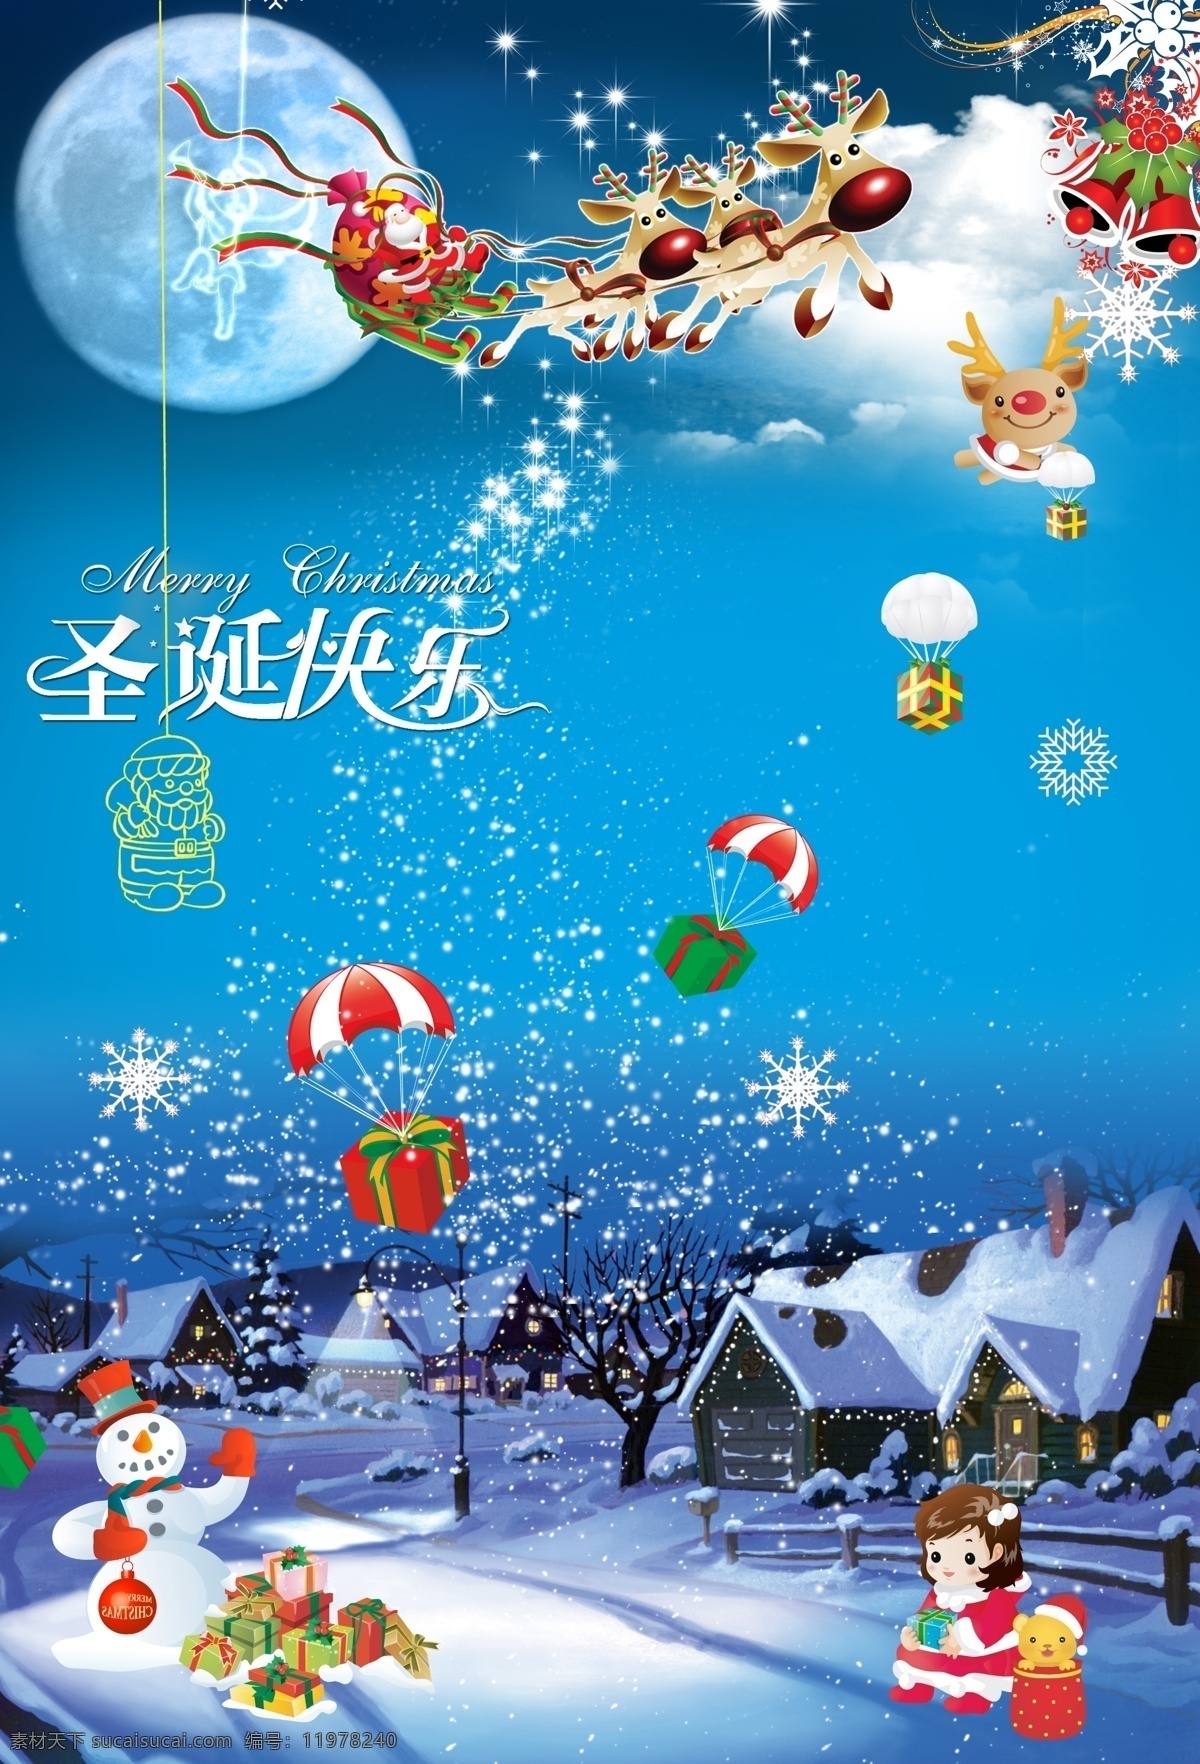 圣诞快乐 海报 圣诞 圣诞老人 圣诞鹿 雪人 礼物 降落伞 小孩 圆月 雪花 雪中的房子 圣诞节海报 psd素材 红色